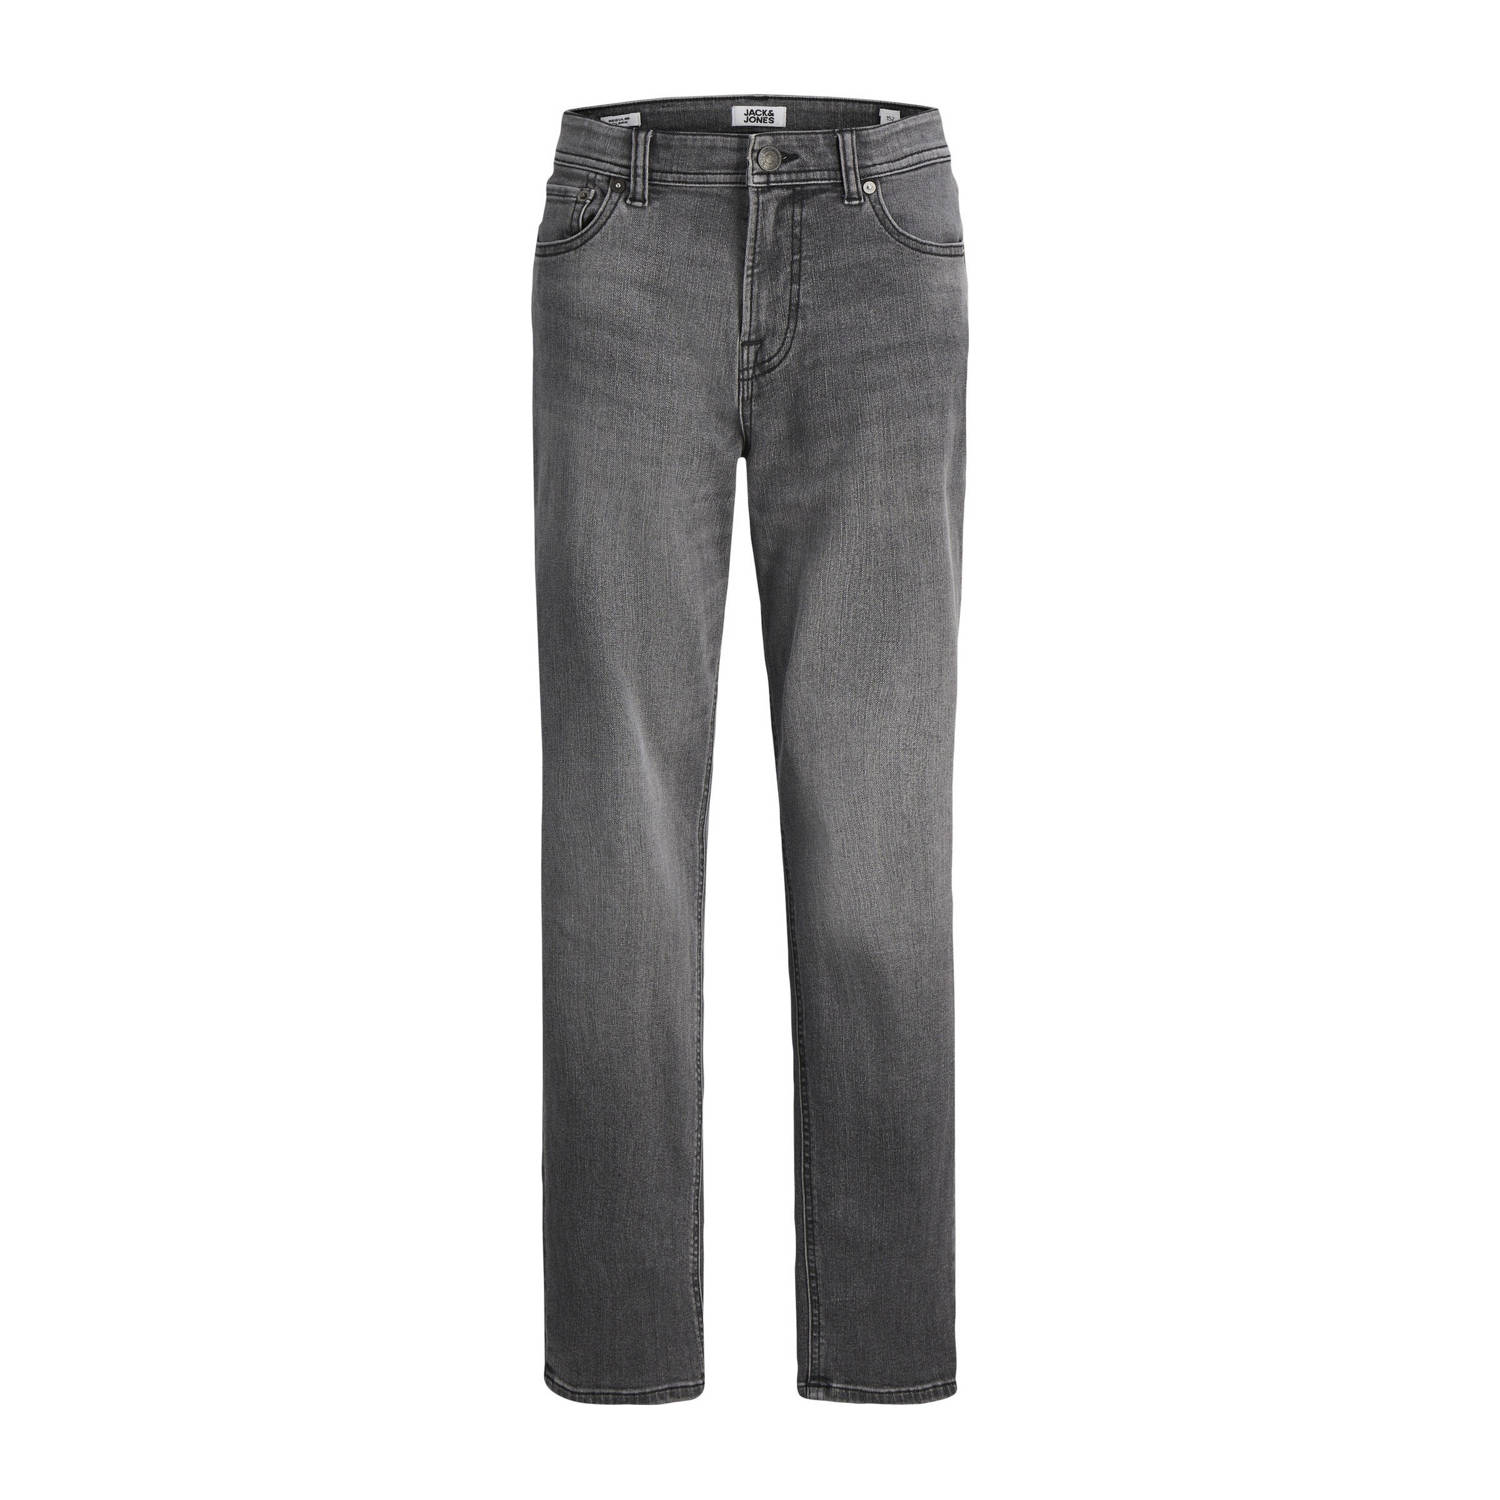 Jack & jones JUNIOR regular fit jeans JJICLARK grey denim Grijs Jongens Stretchdenim 170